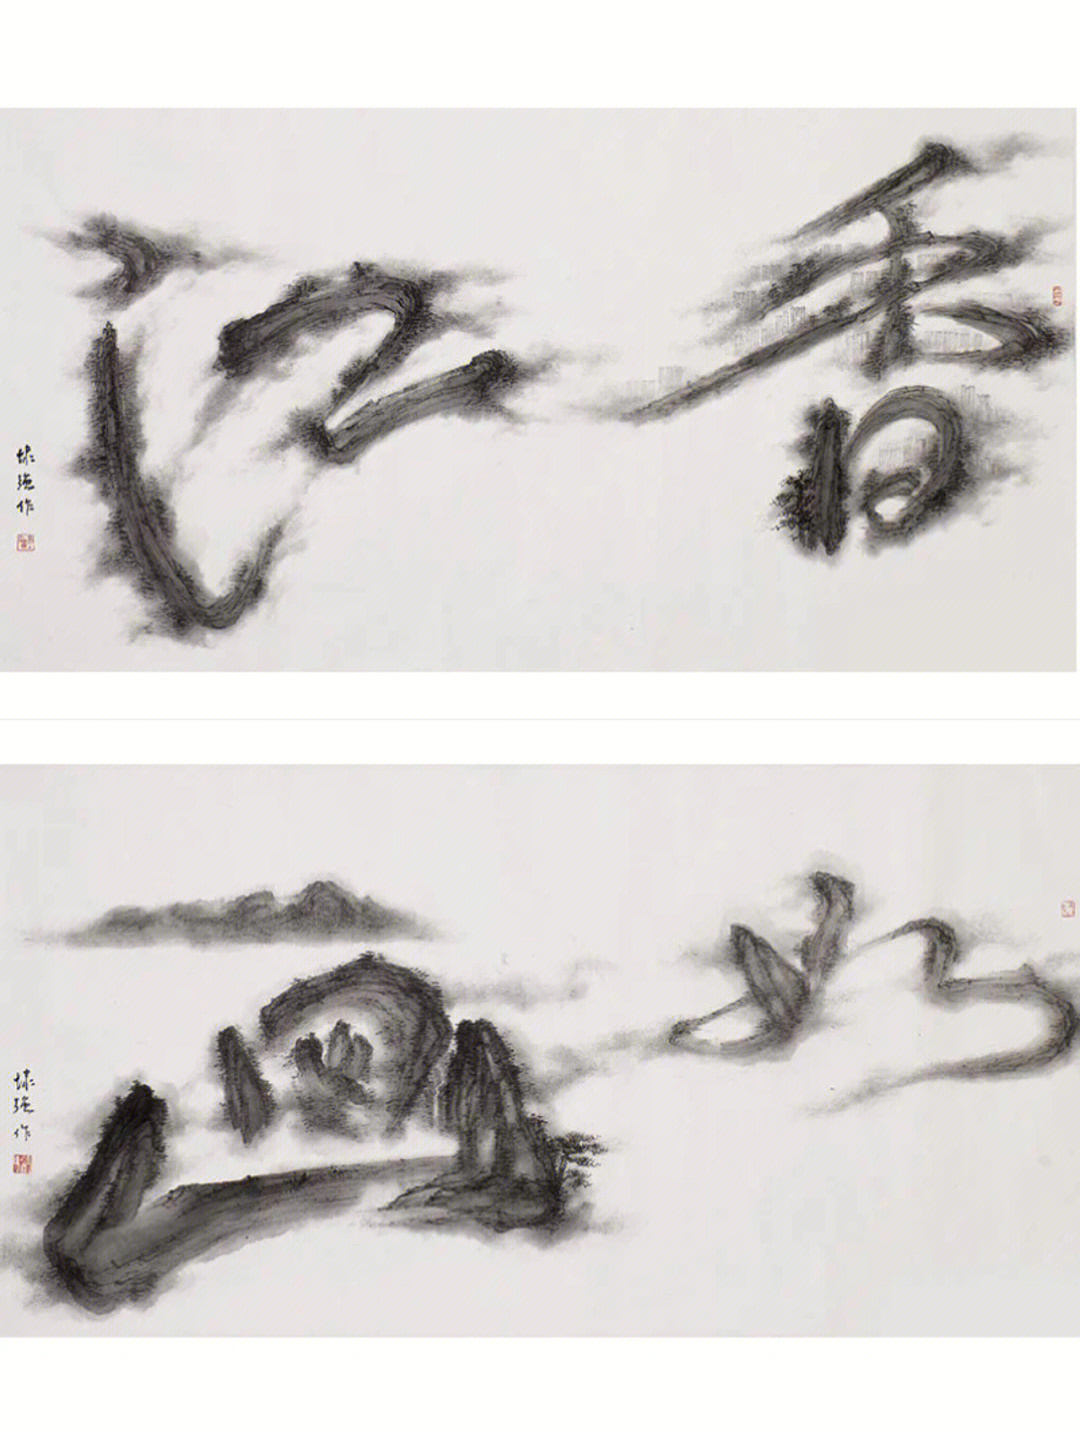 靳埭强的作品取材于中国山水画,将中国画,书法,设计与艺术进行揉合,在